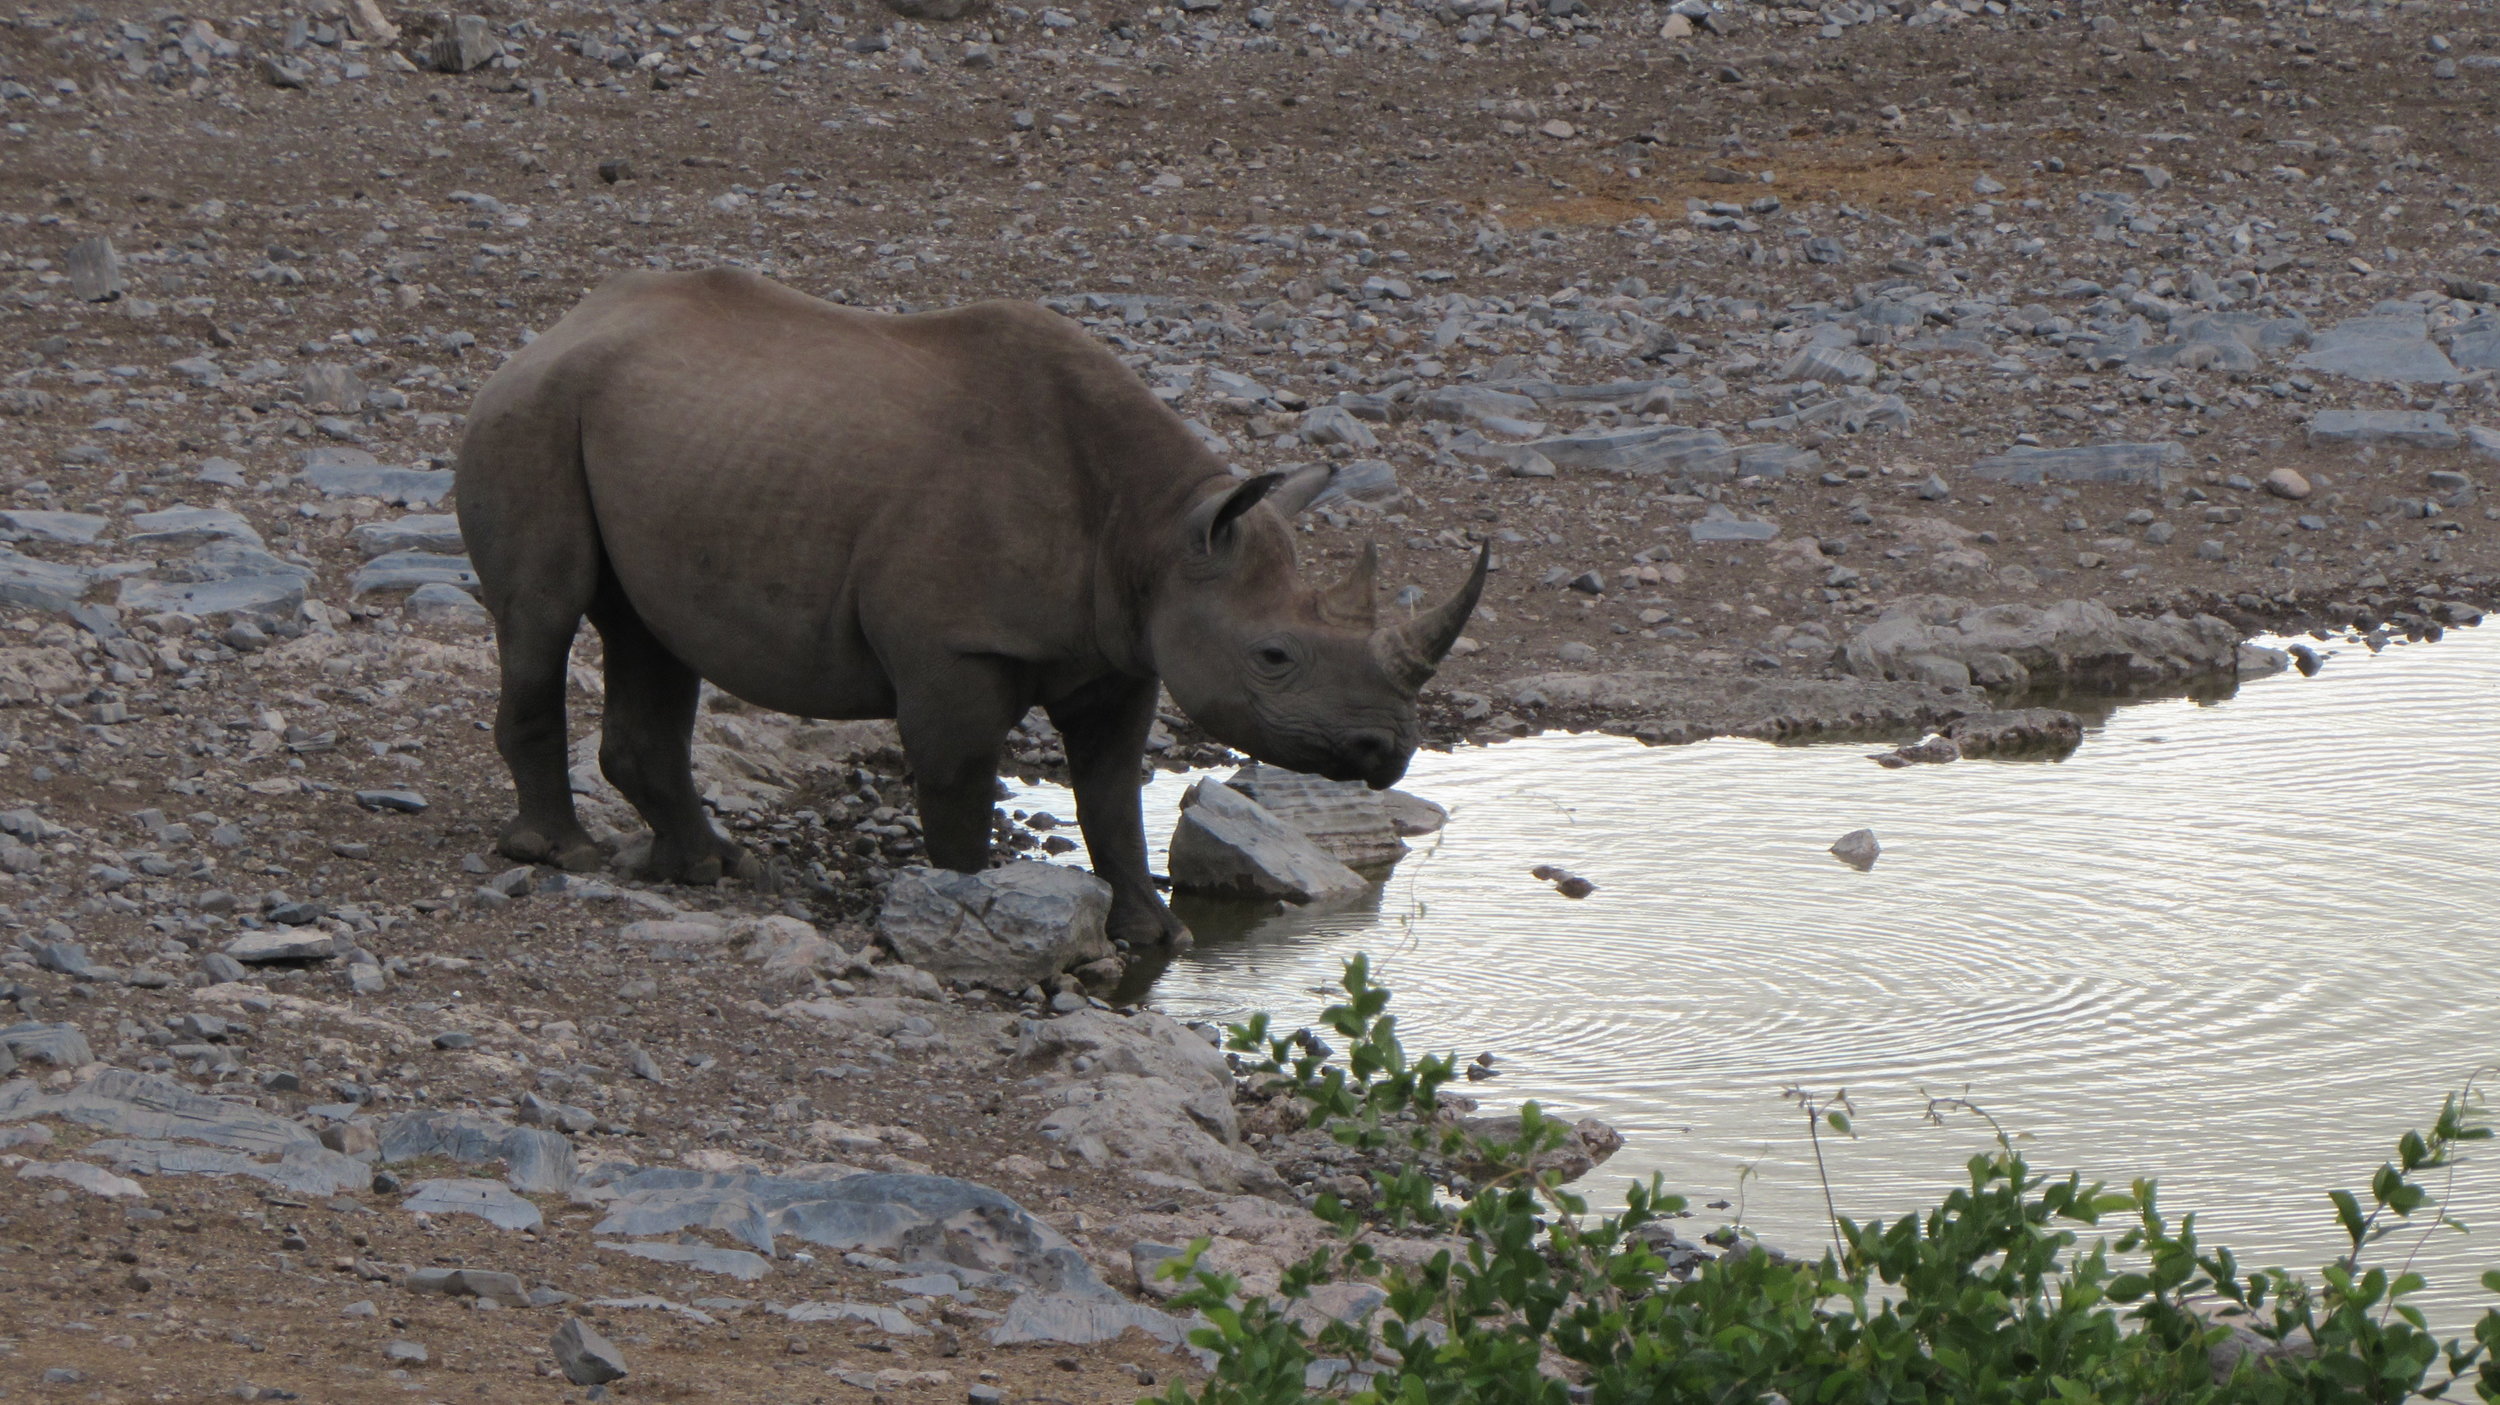 A rhino in the early morning at Halali waterhole